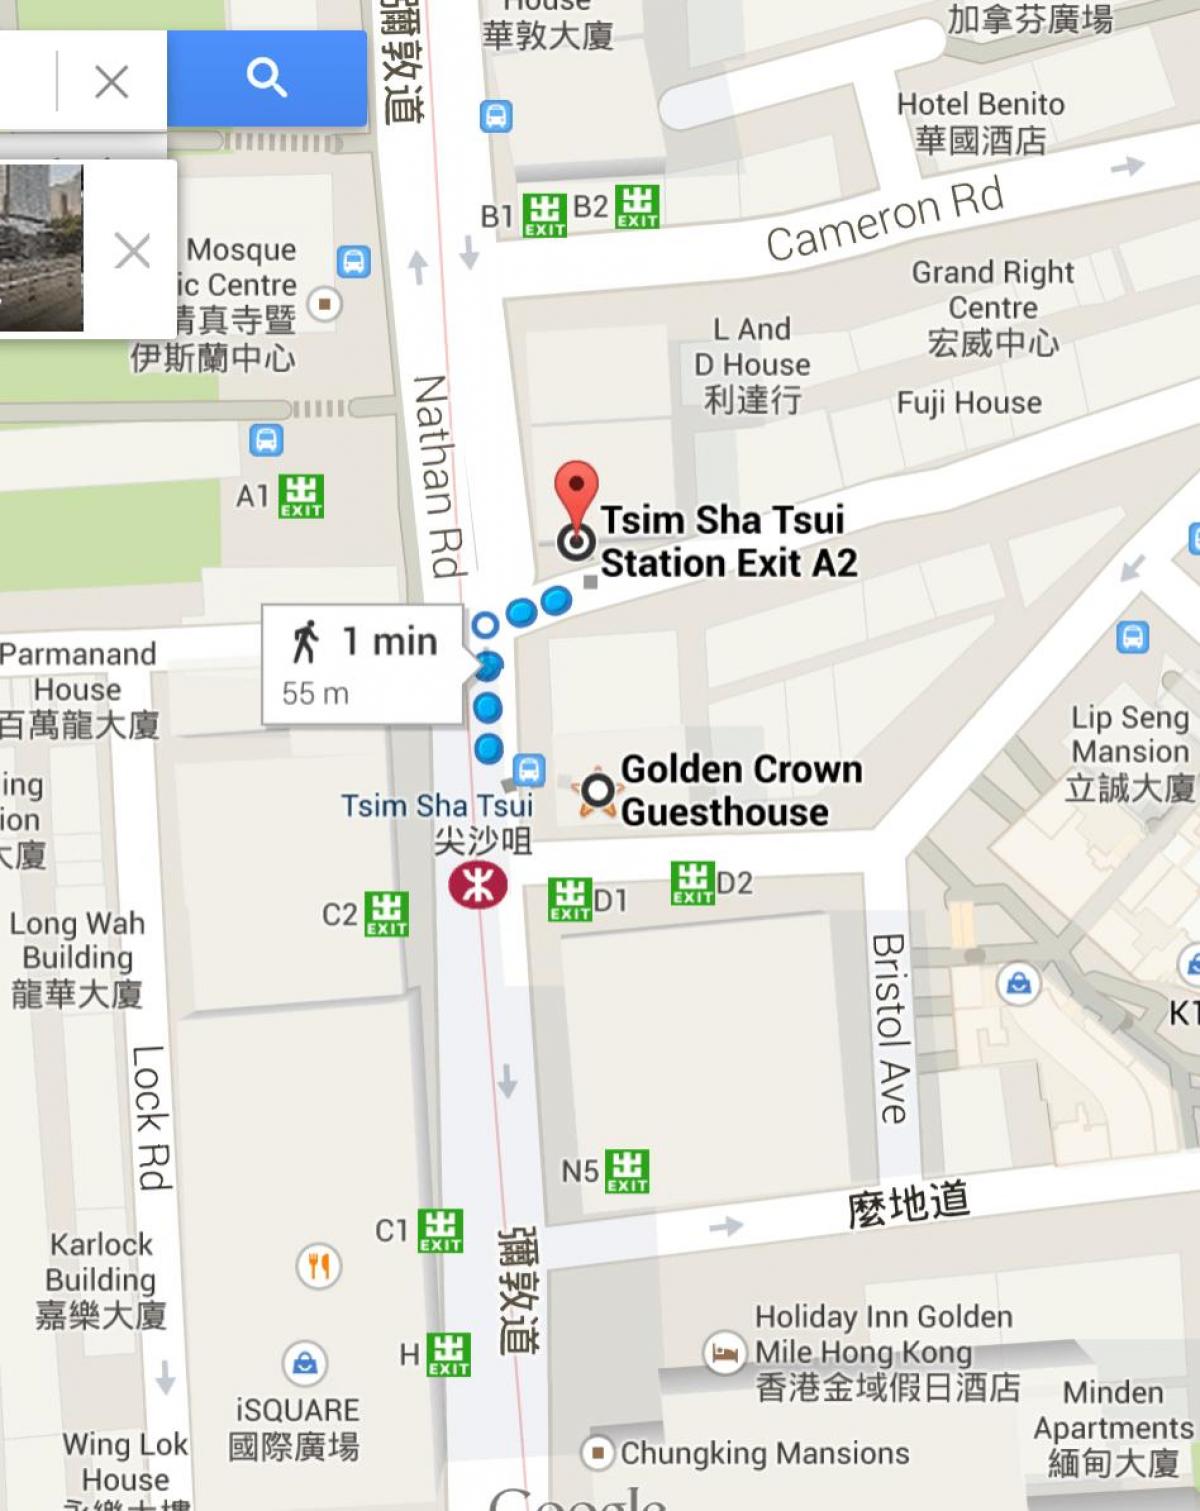 Tsim Sha Tsui एमटीआर स्टेशन का नक्शा